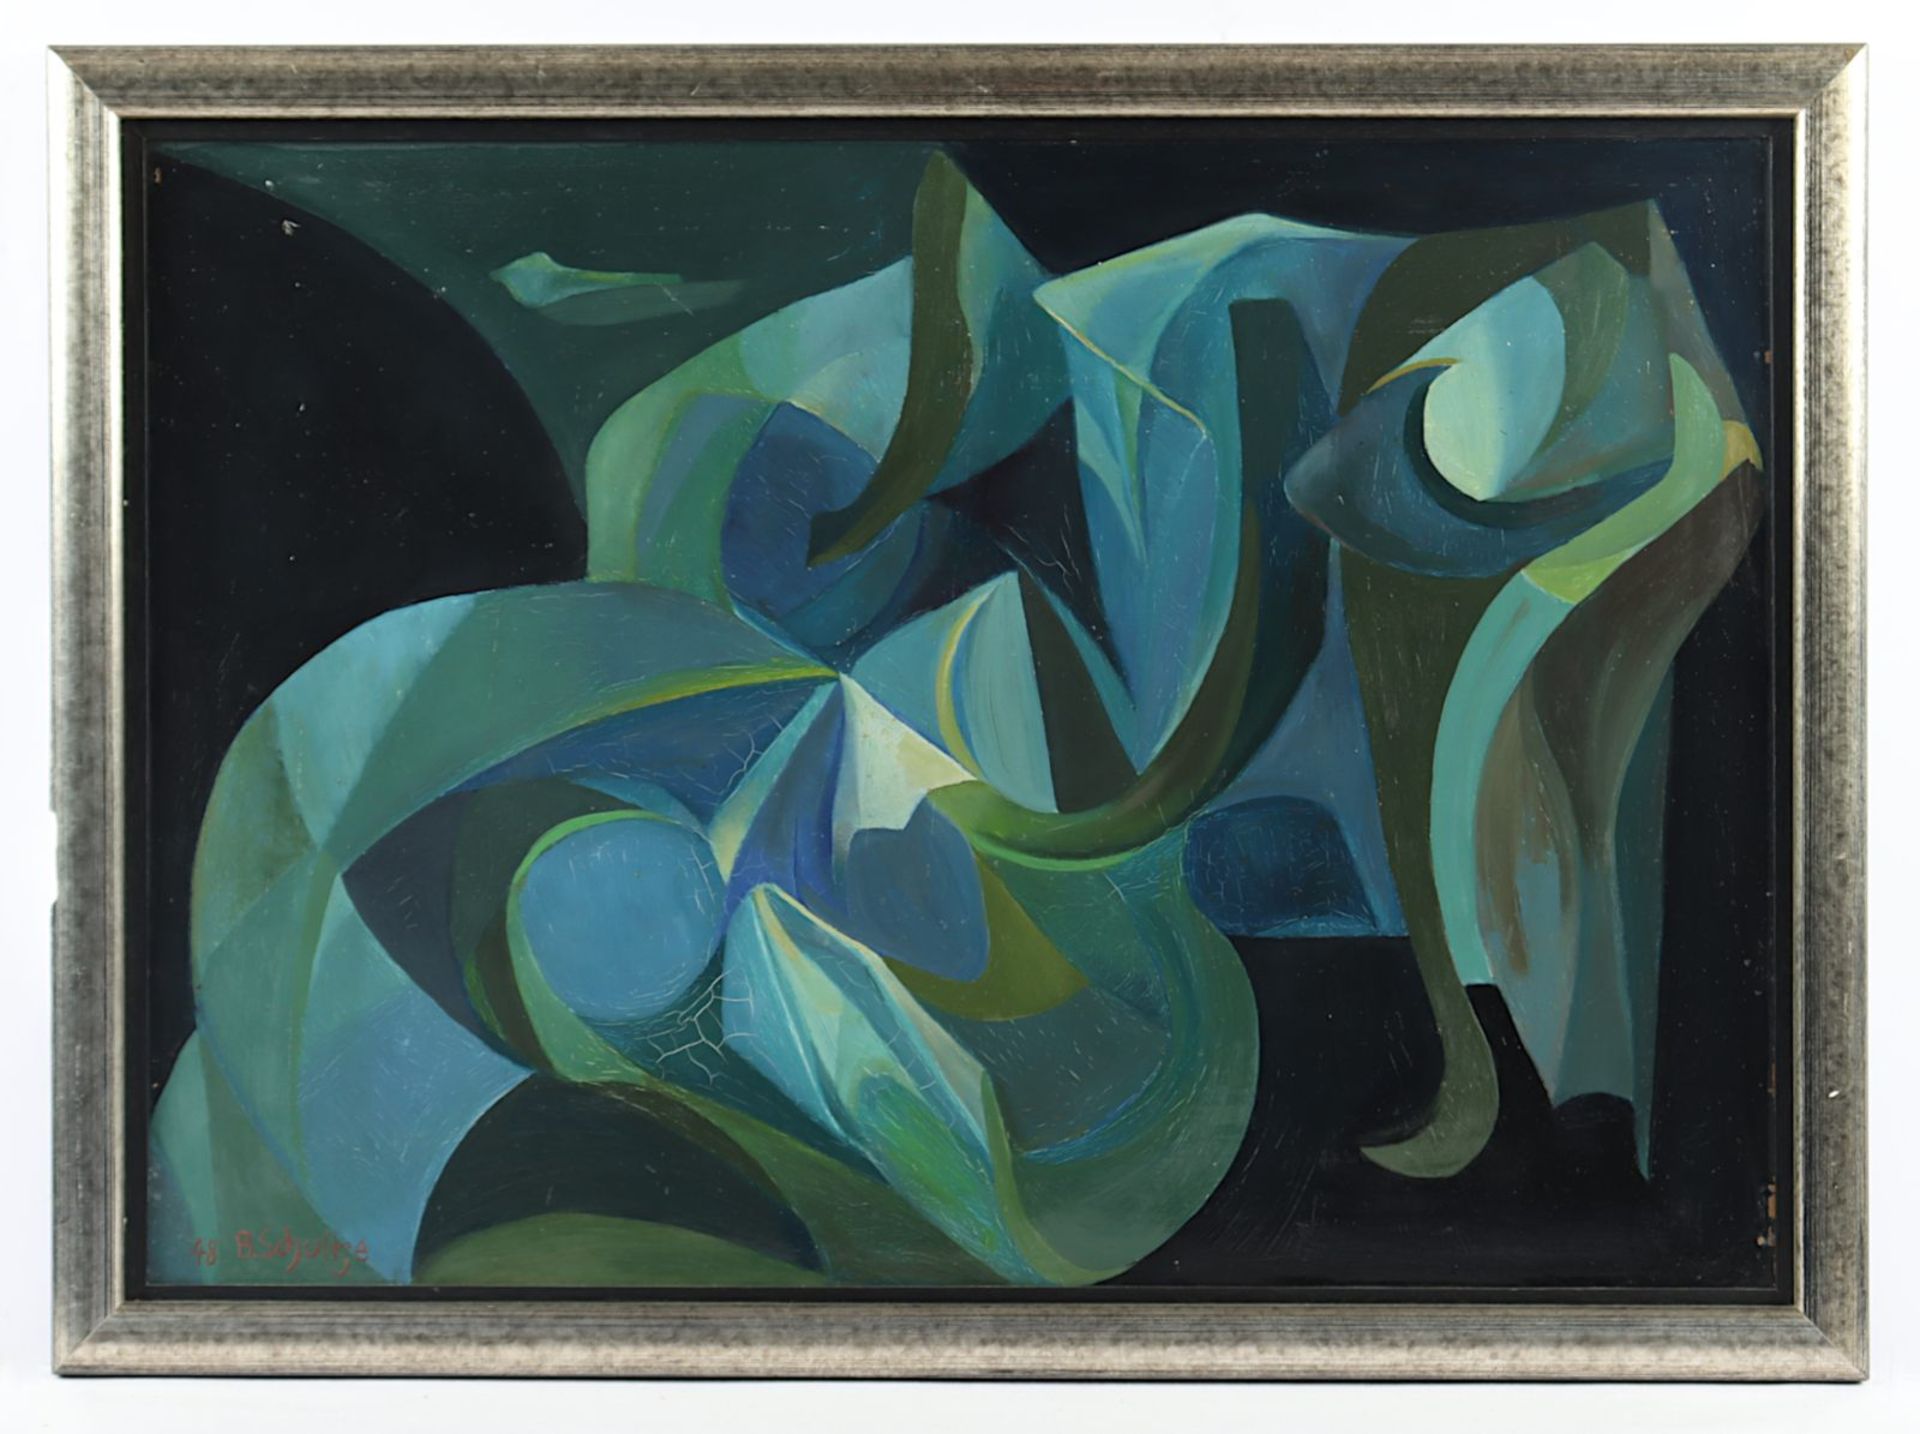 Schultze, Bernard, "Mondlichtgarten", 1948, R.